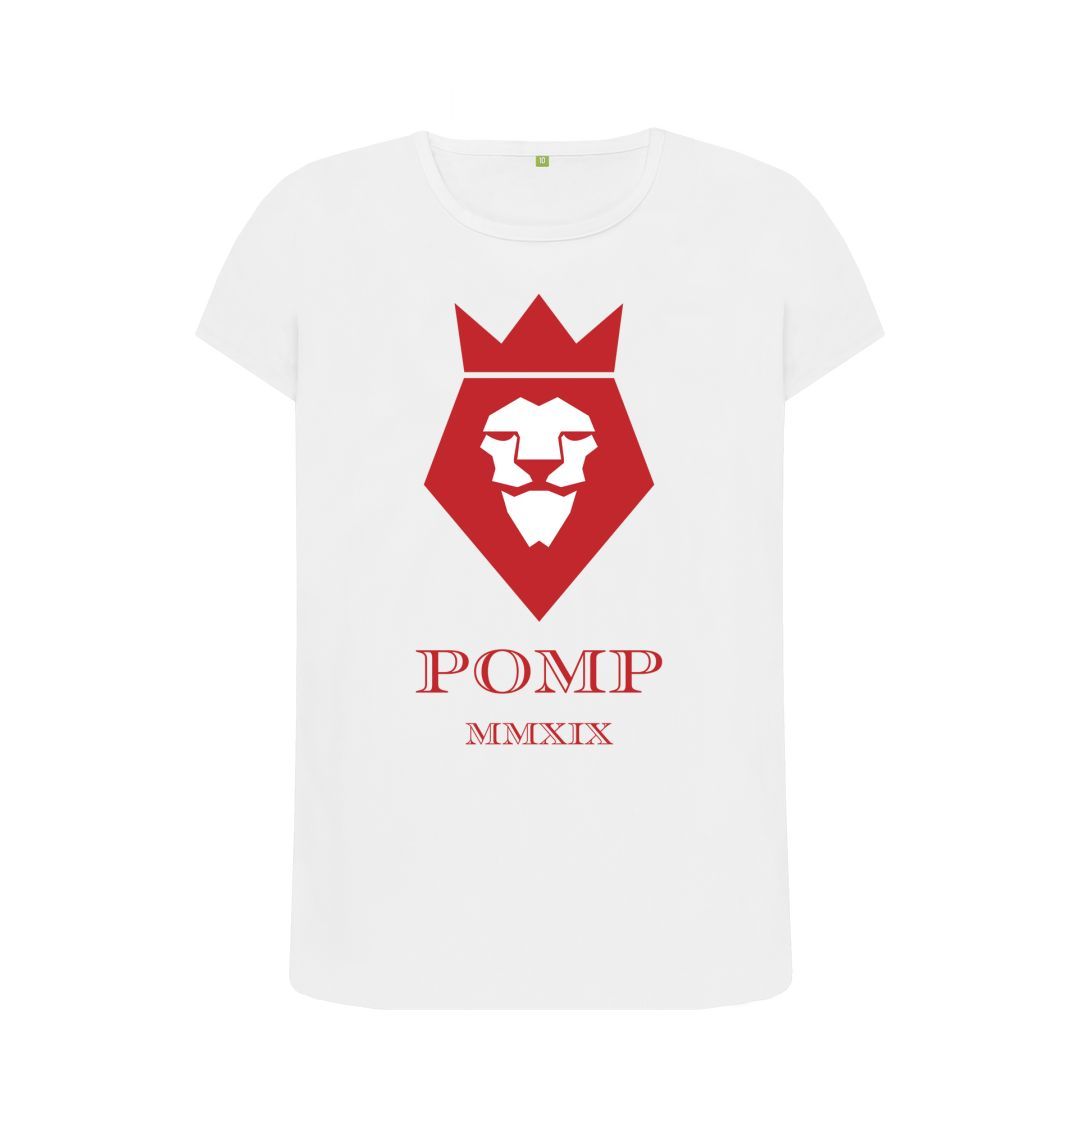 White Women's POMP MMXIX t-shirt